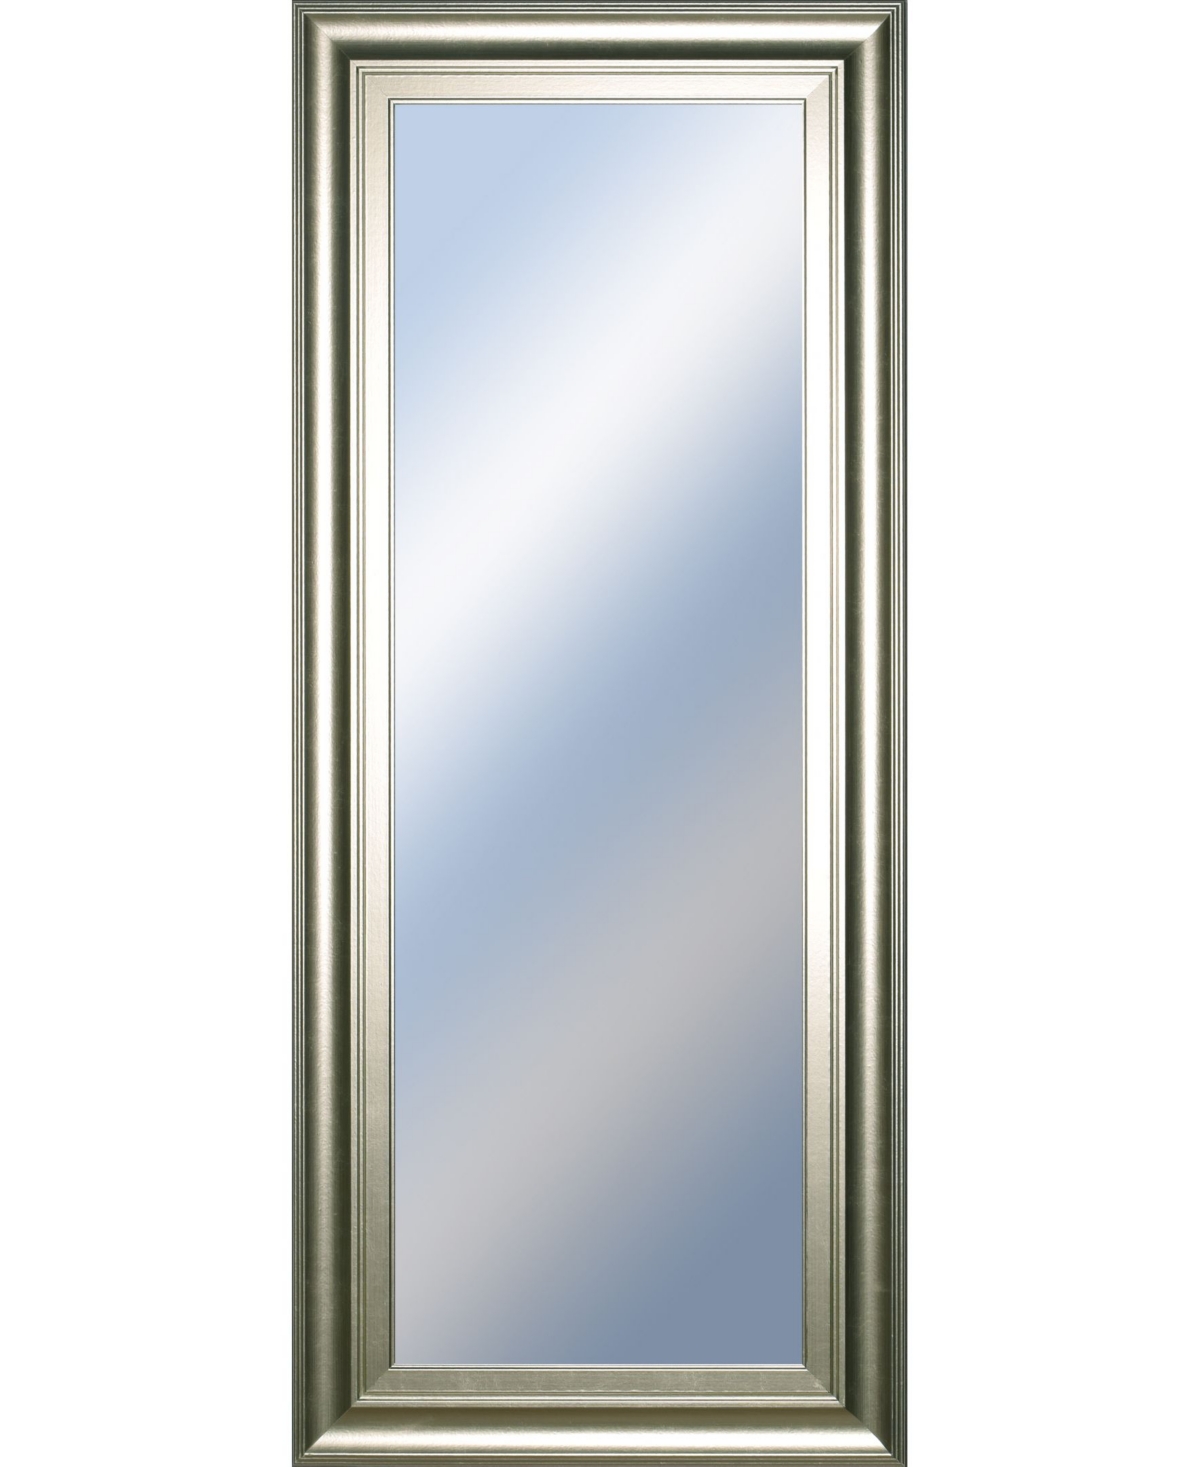 Decorative Framed Wall Mirror, 18" x 42" - Silver